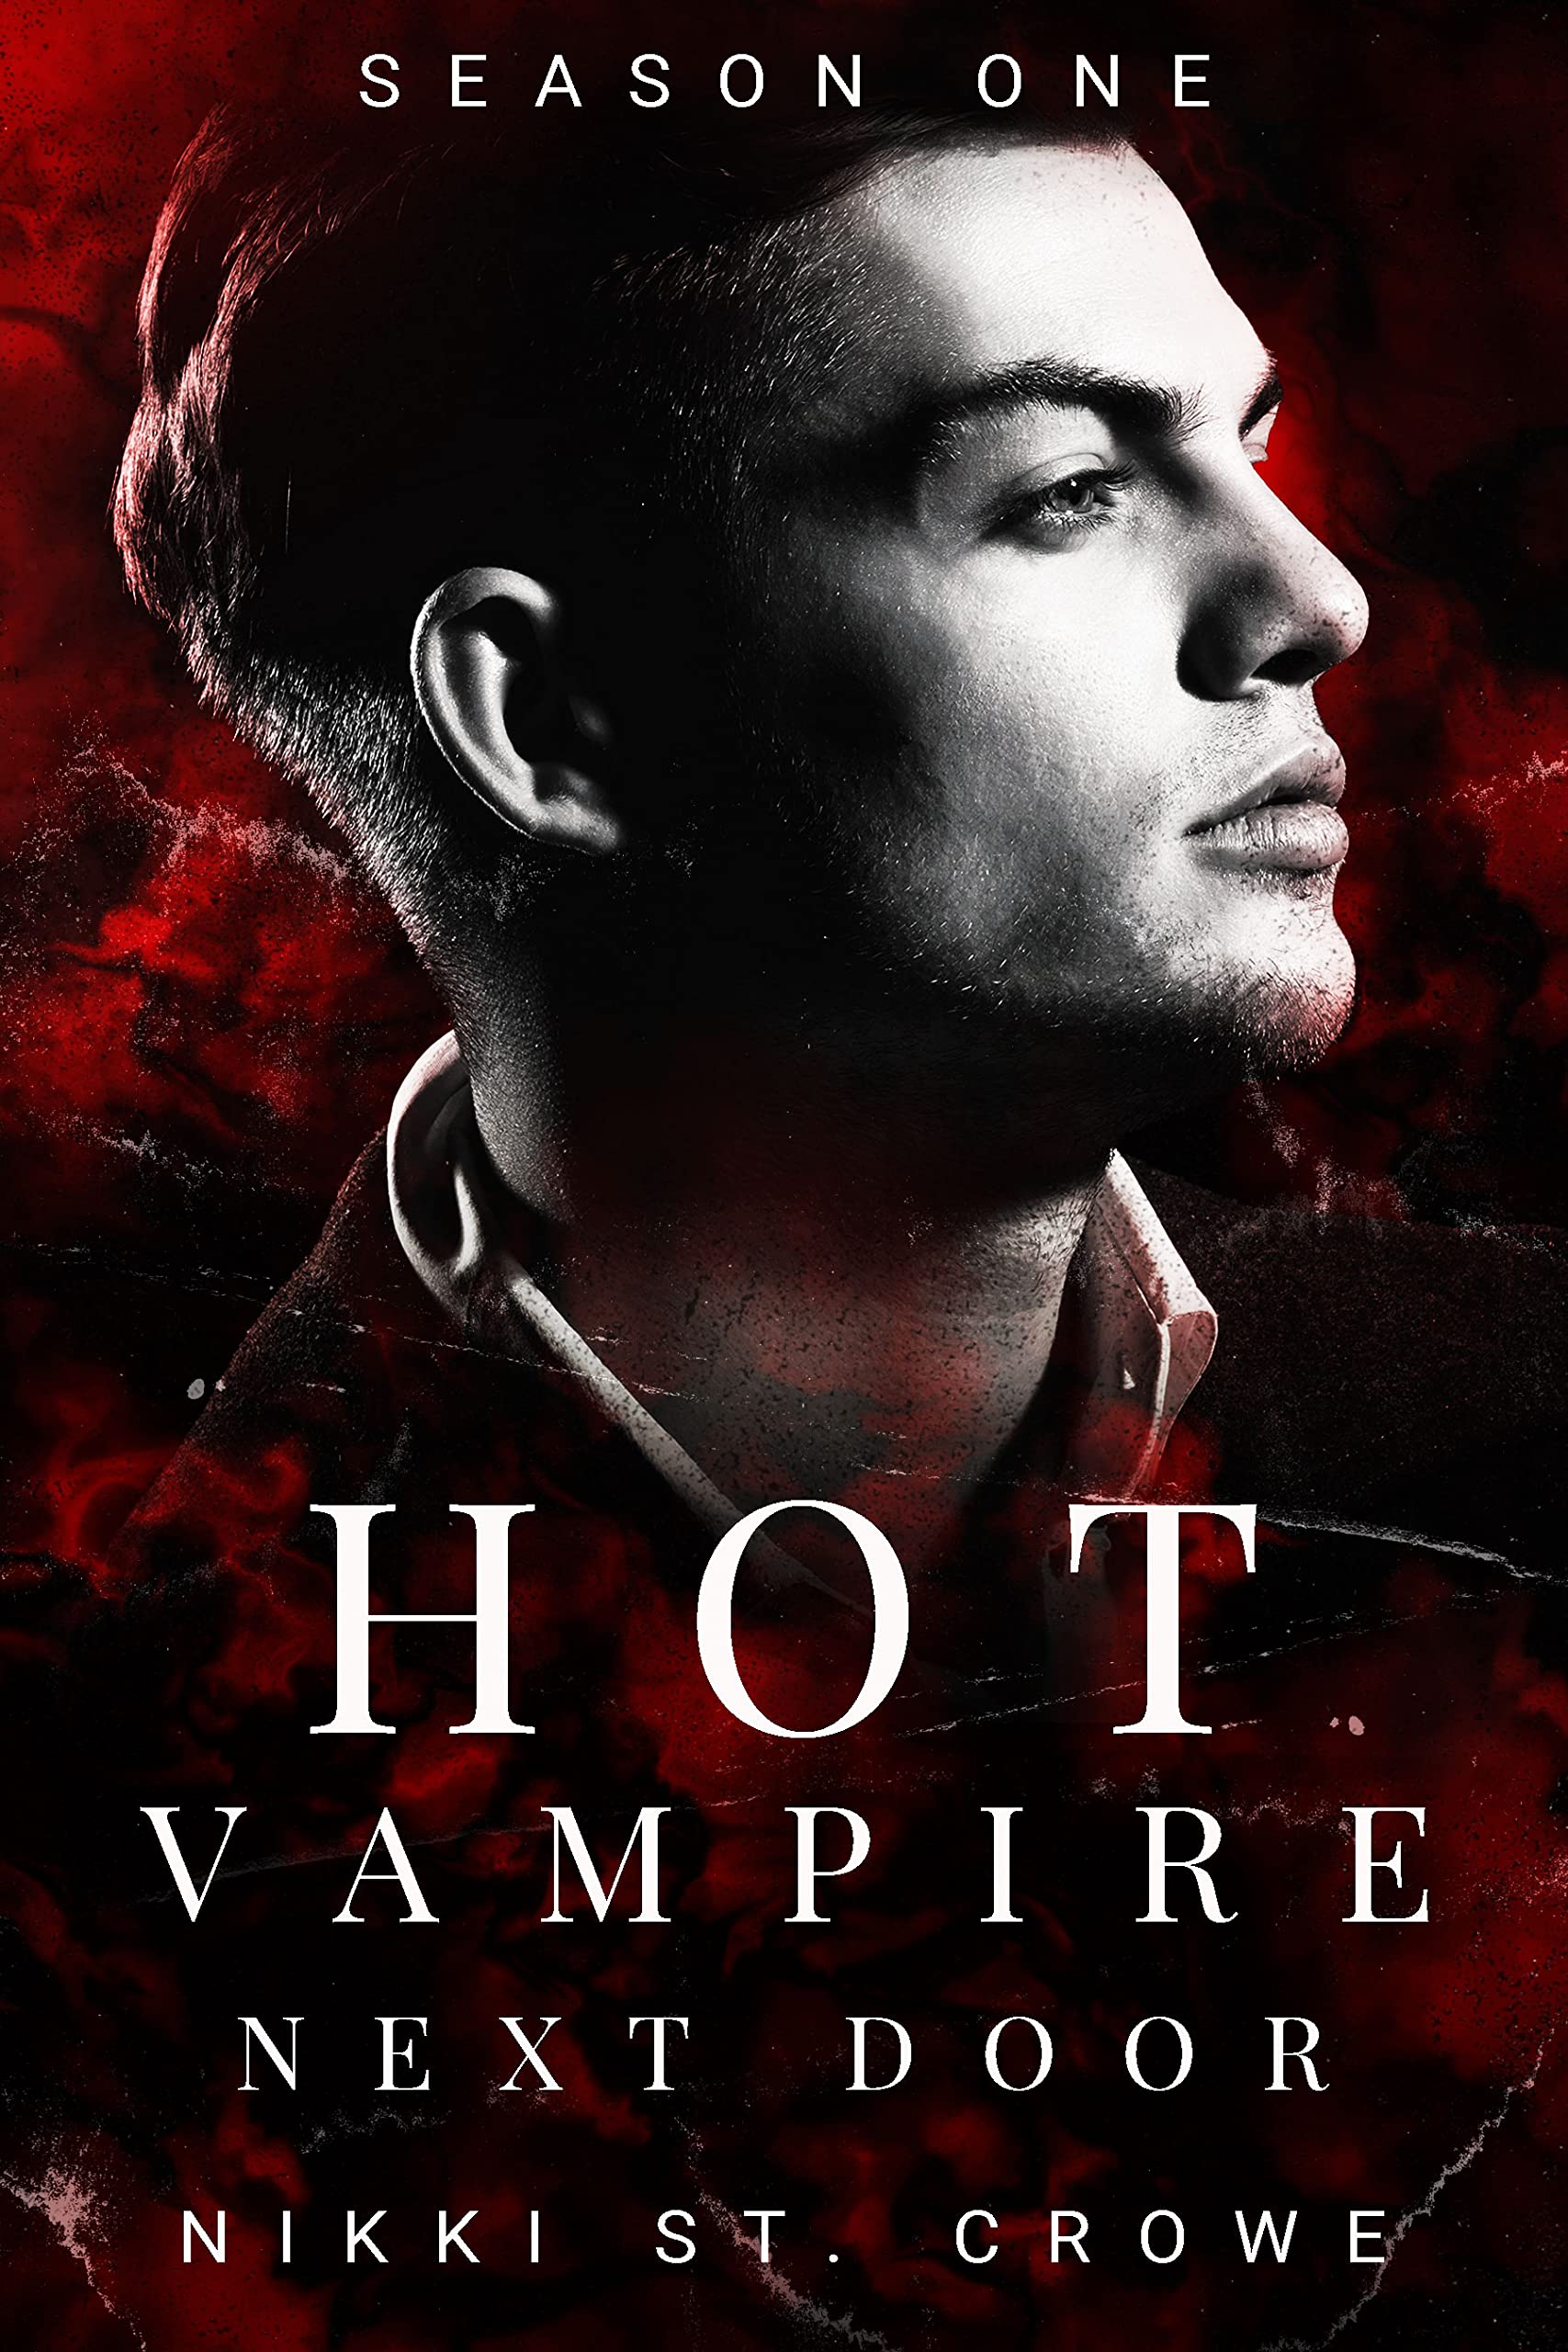 Hot Vampire Next Door By Nikki St. Crowe